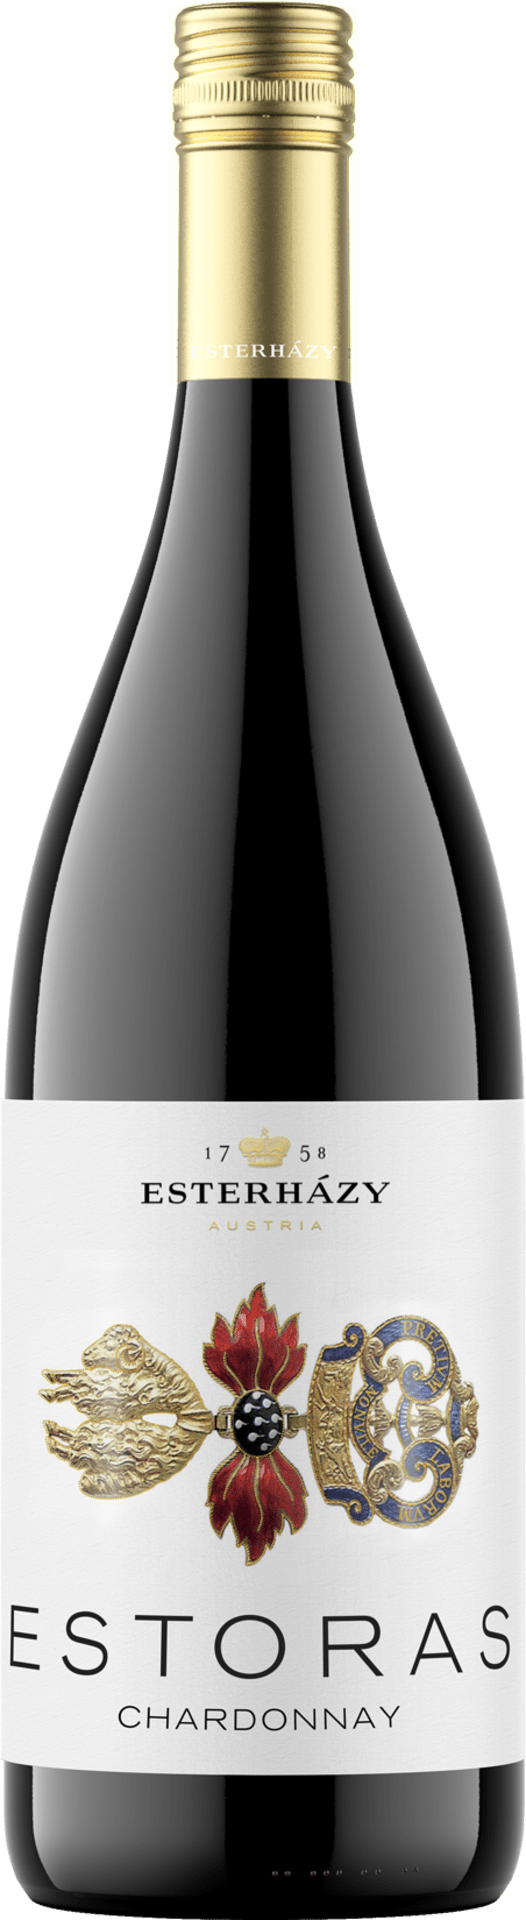 Estoras Chardonnay Esterhazy